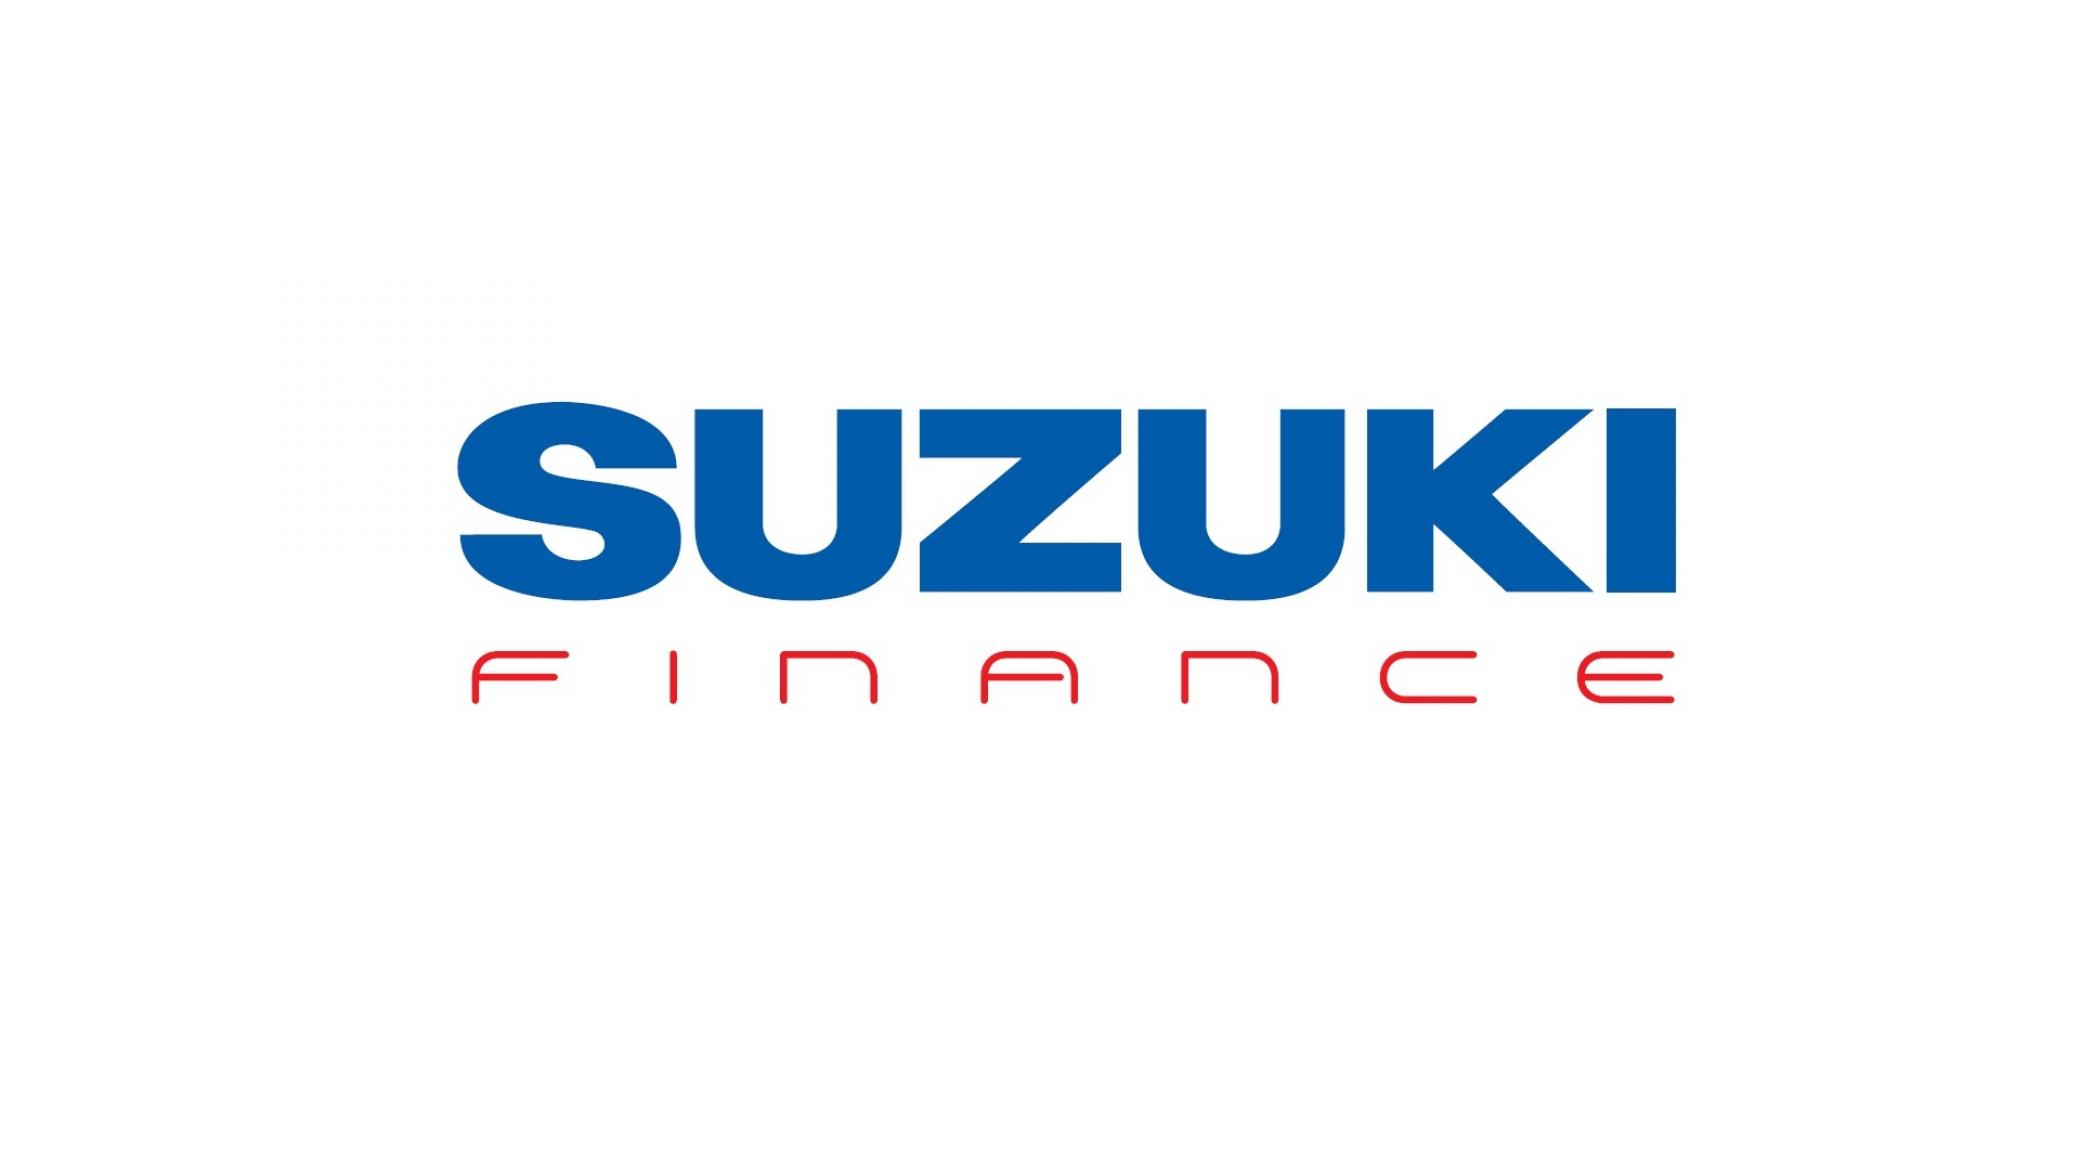 Suzuki finance